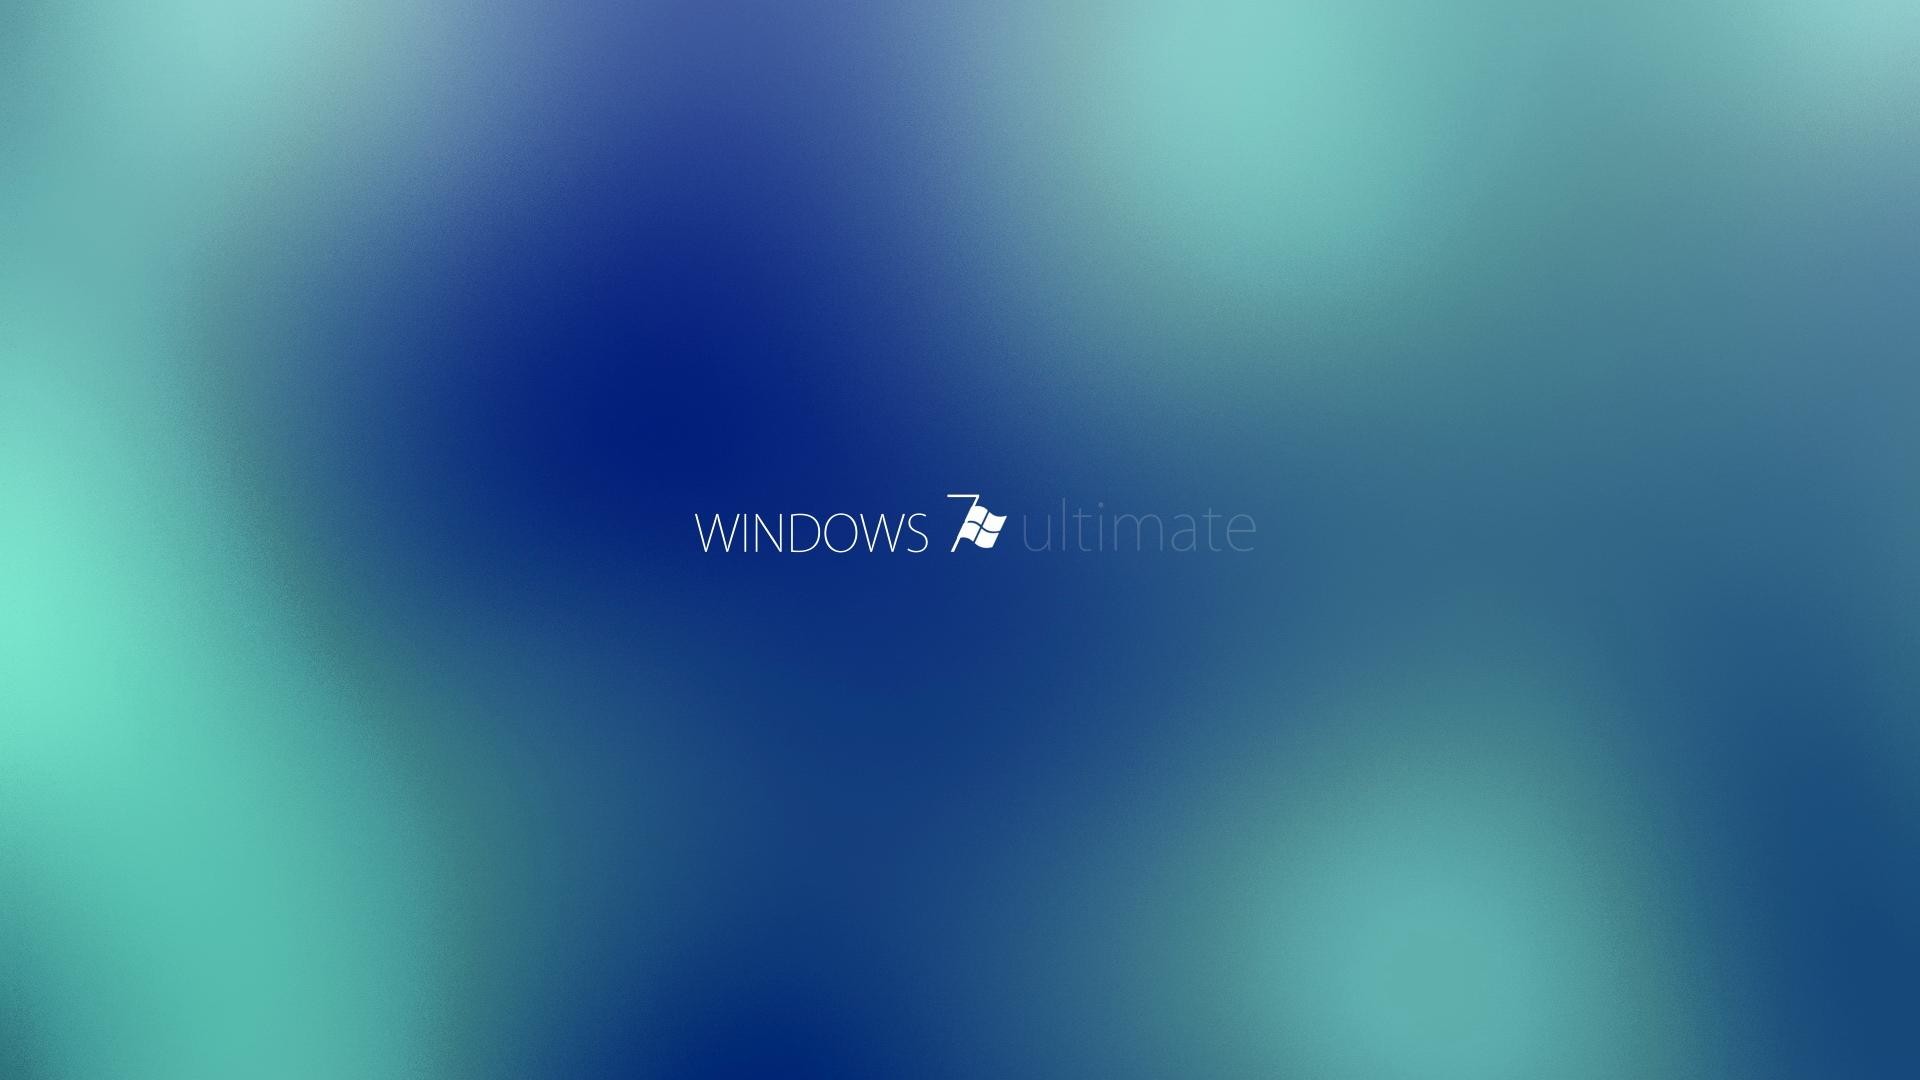 Windows Ultimate Desktop Background Image